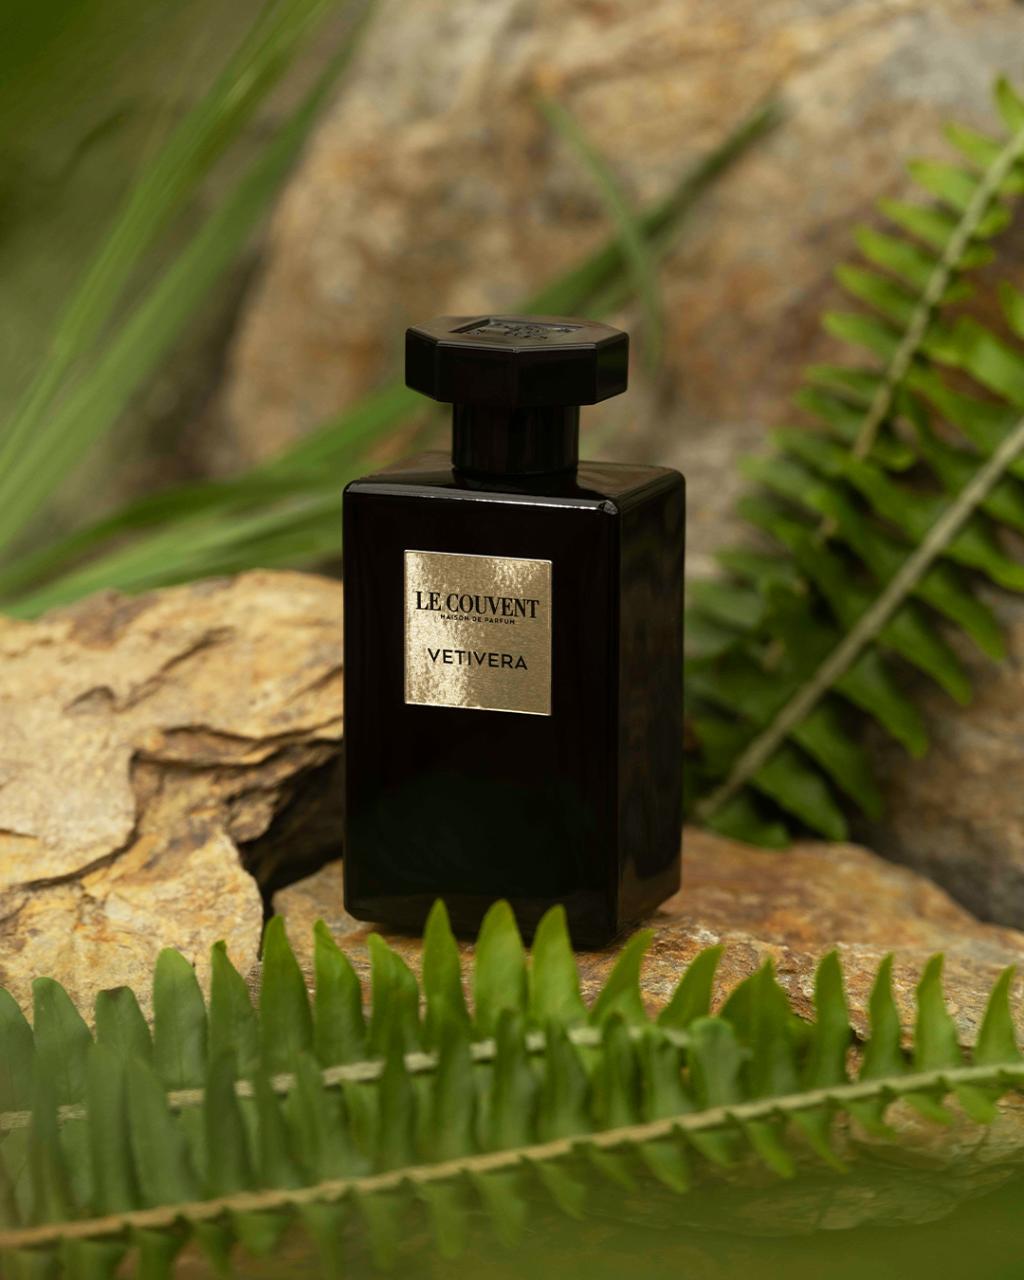 Le Couvent, Vetivera, perfumy, 699 zł/100 ml (dostępne w Douglas i na douglas.pl)